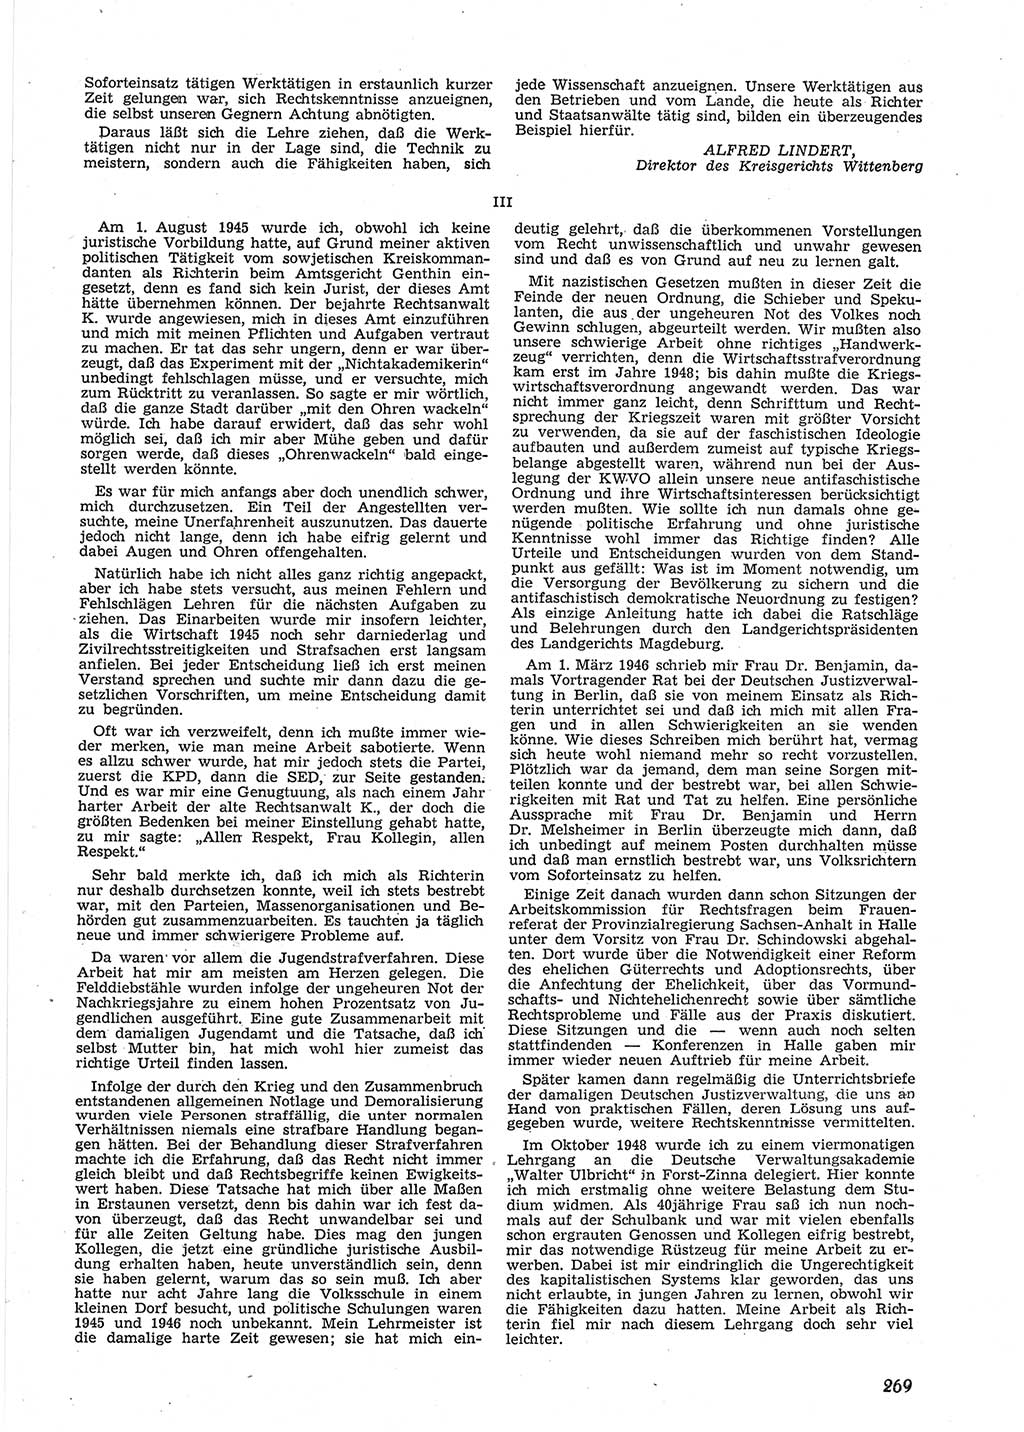 Neue Justiz (NJ), Zeitschrift für Recht und Rechtswissenschaft [Deutsche Demokratische Republik (DDR)], 9. Jahrgang 1955, Seite 269 (NJ DDR 1955, S. 269)